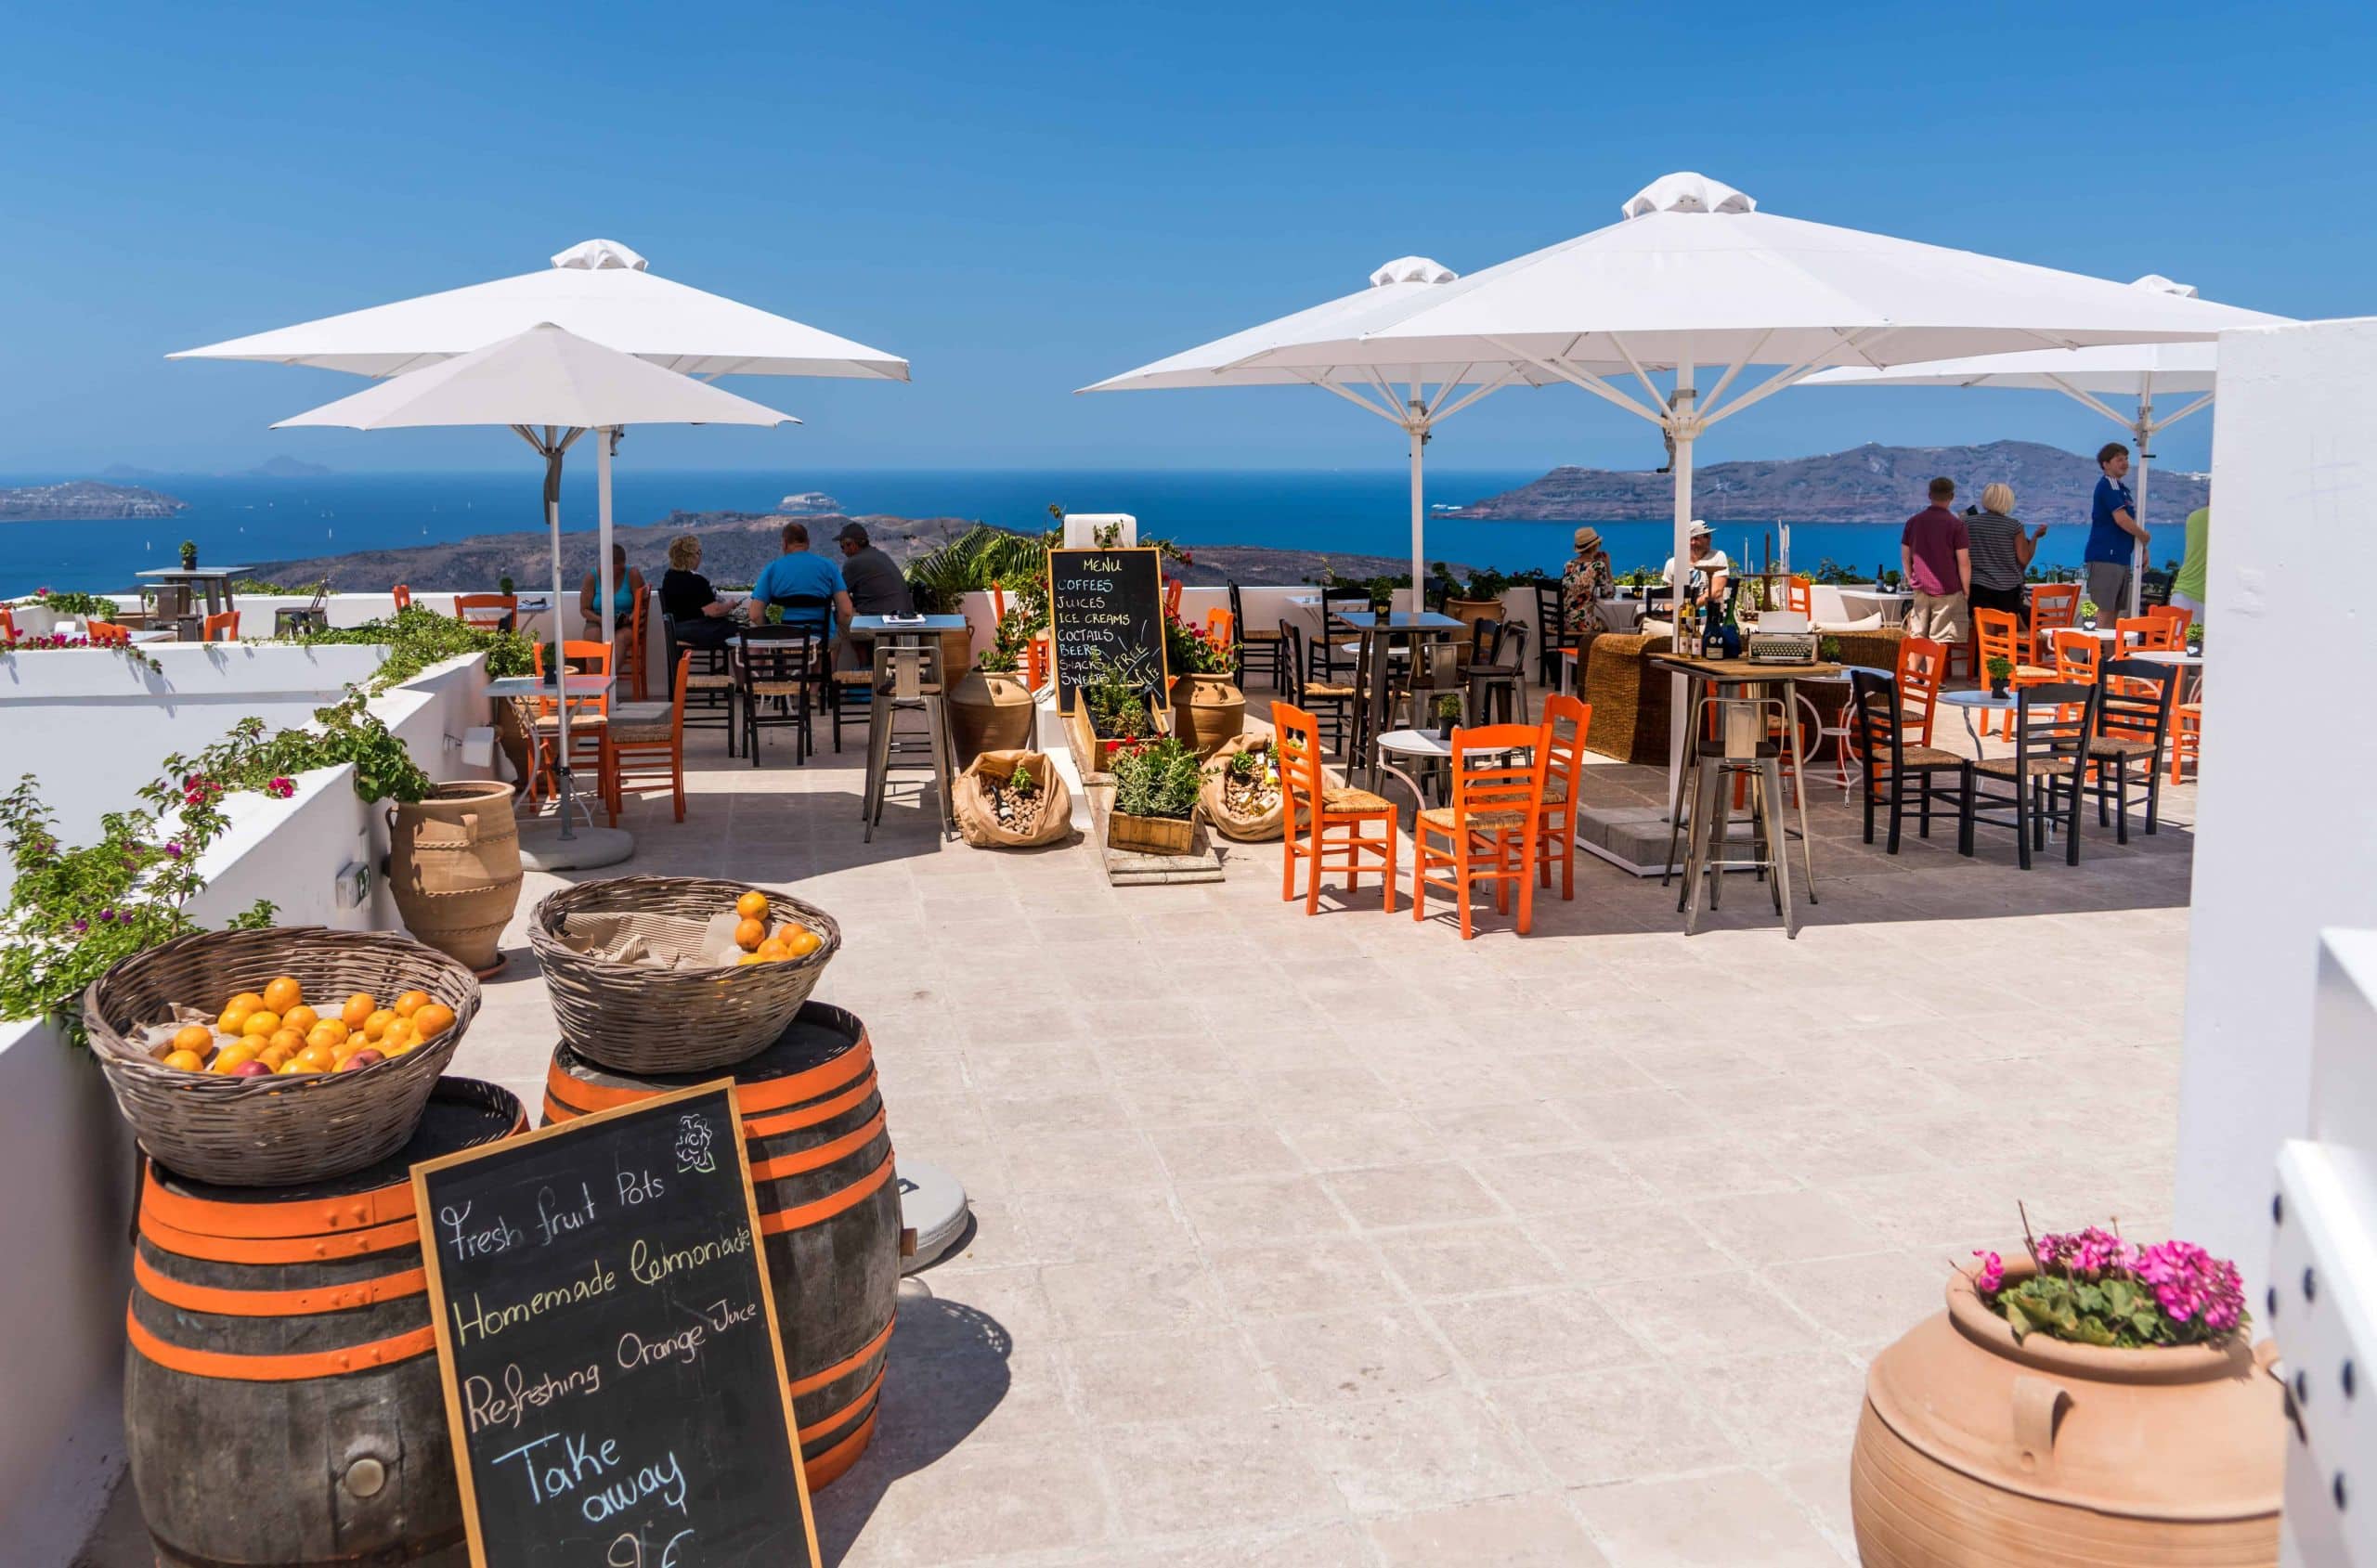 popular destinations in greece - santorini cafe